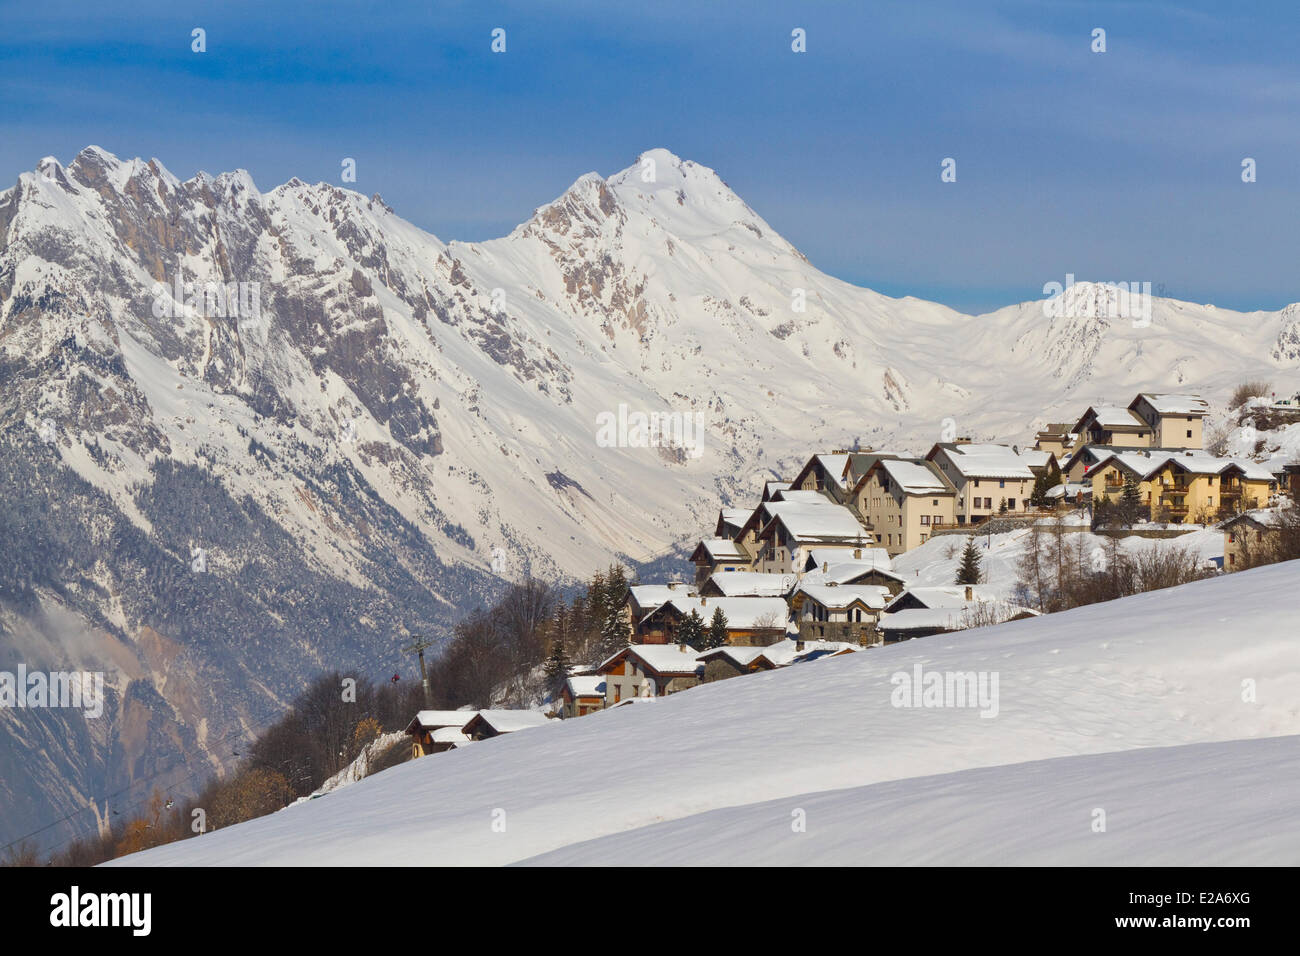 France, Savoie, vallée de la Maurienne, station de ski Valmeinier Banque D'Images